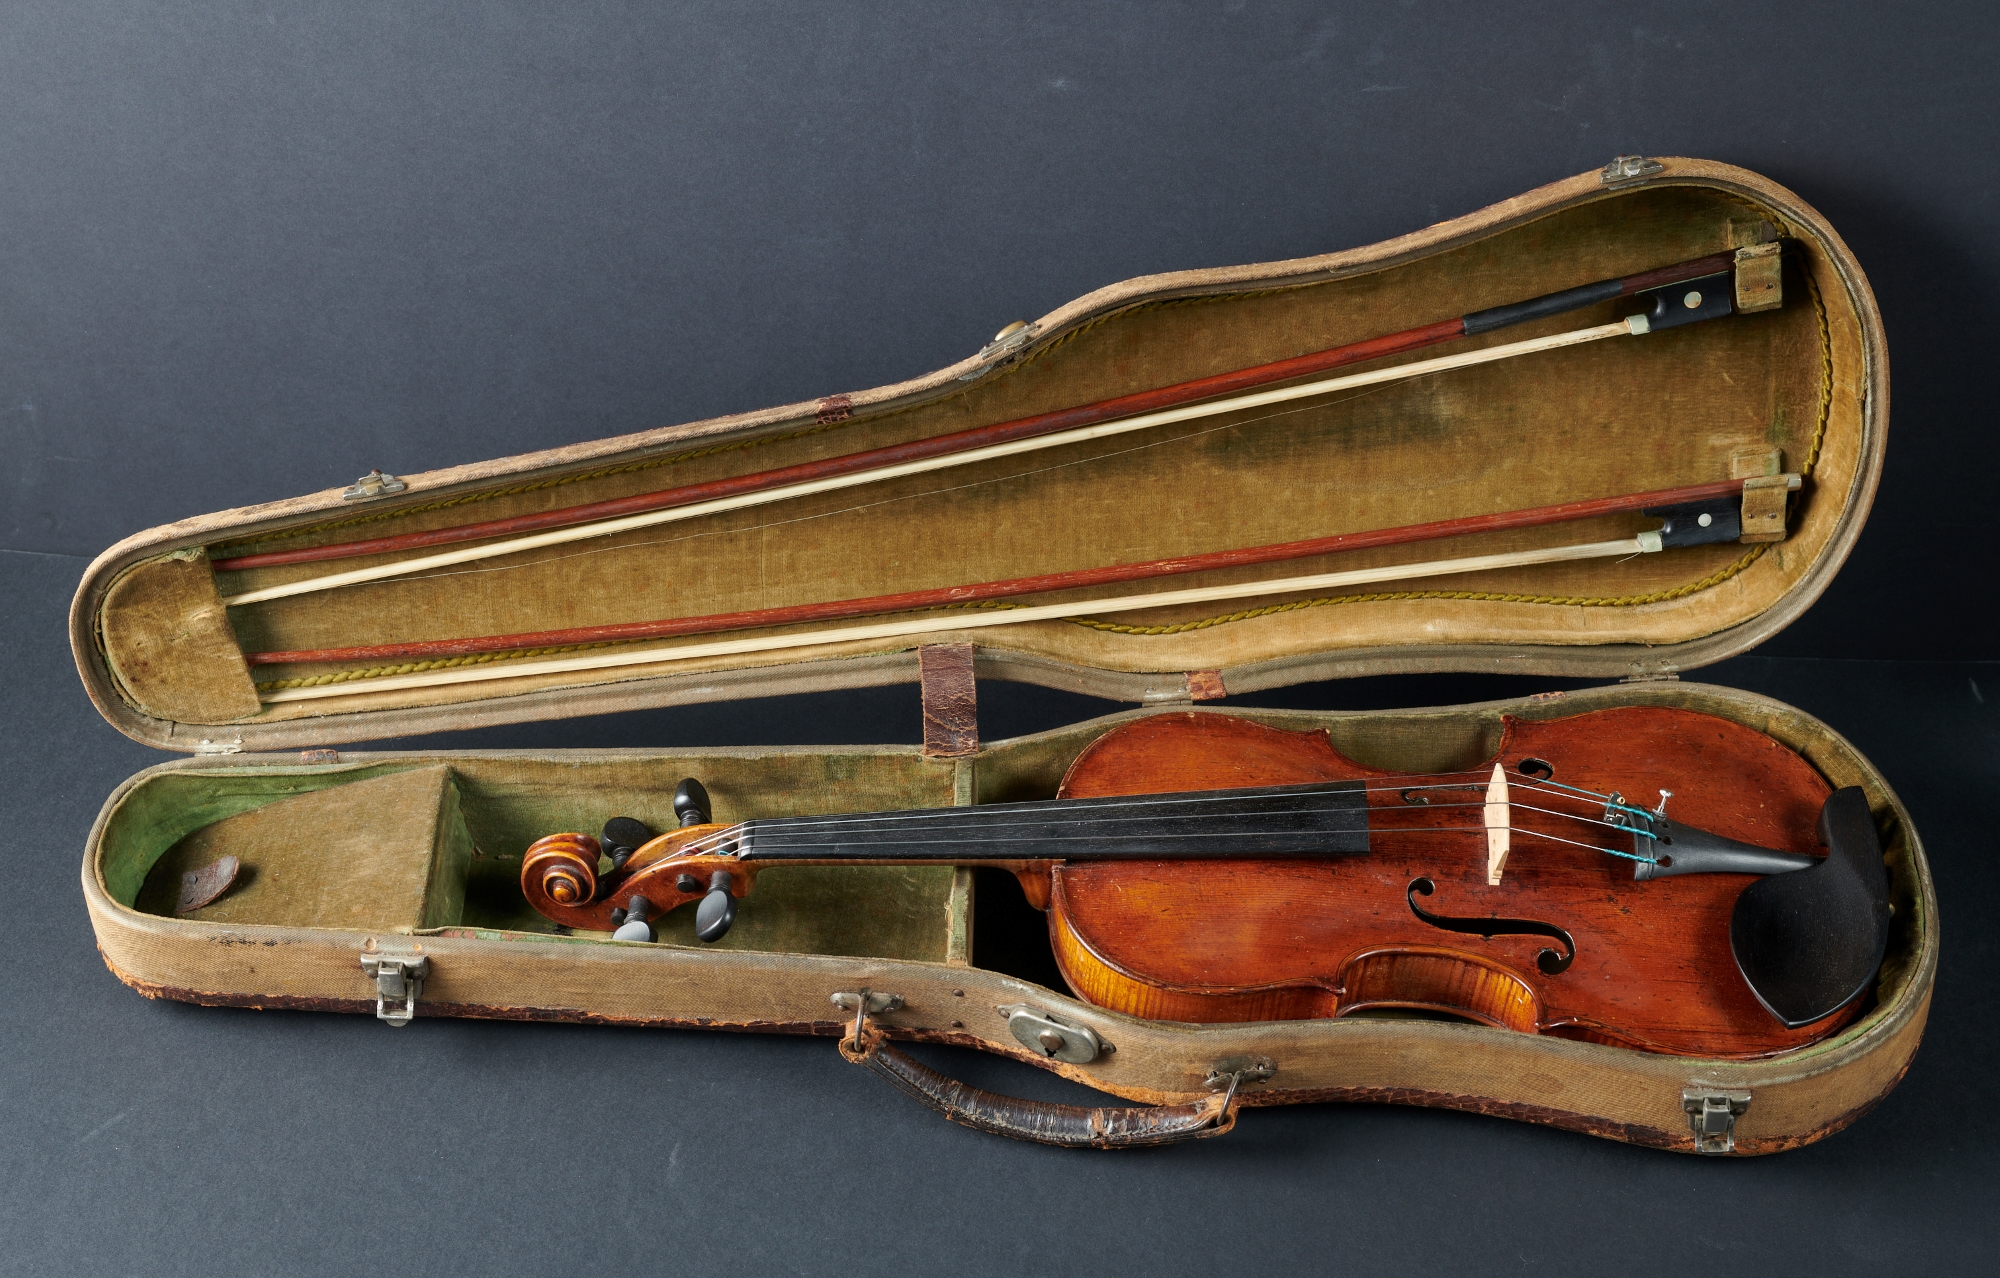 The Violin of Marek Izydor Bauer